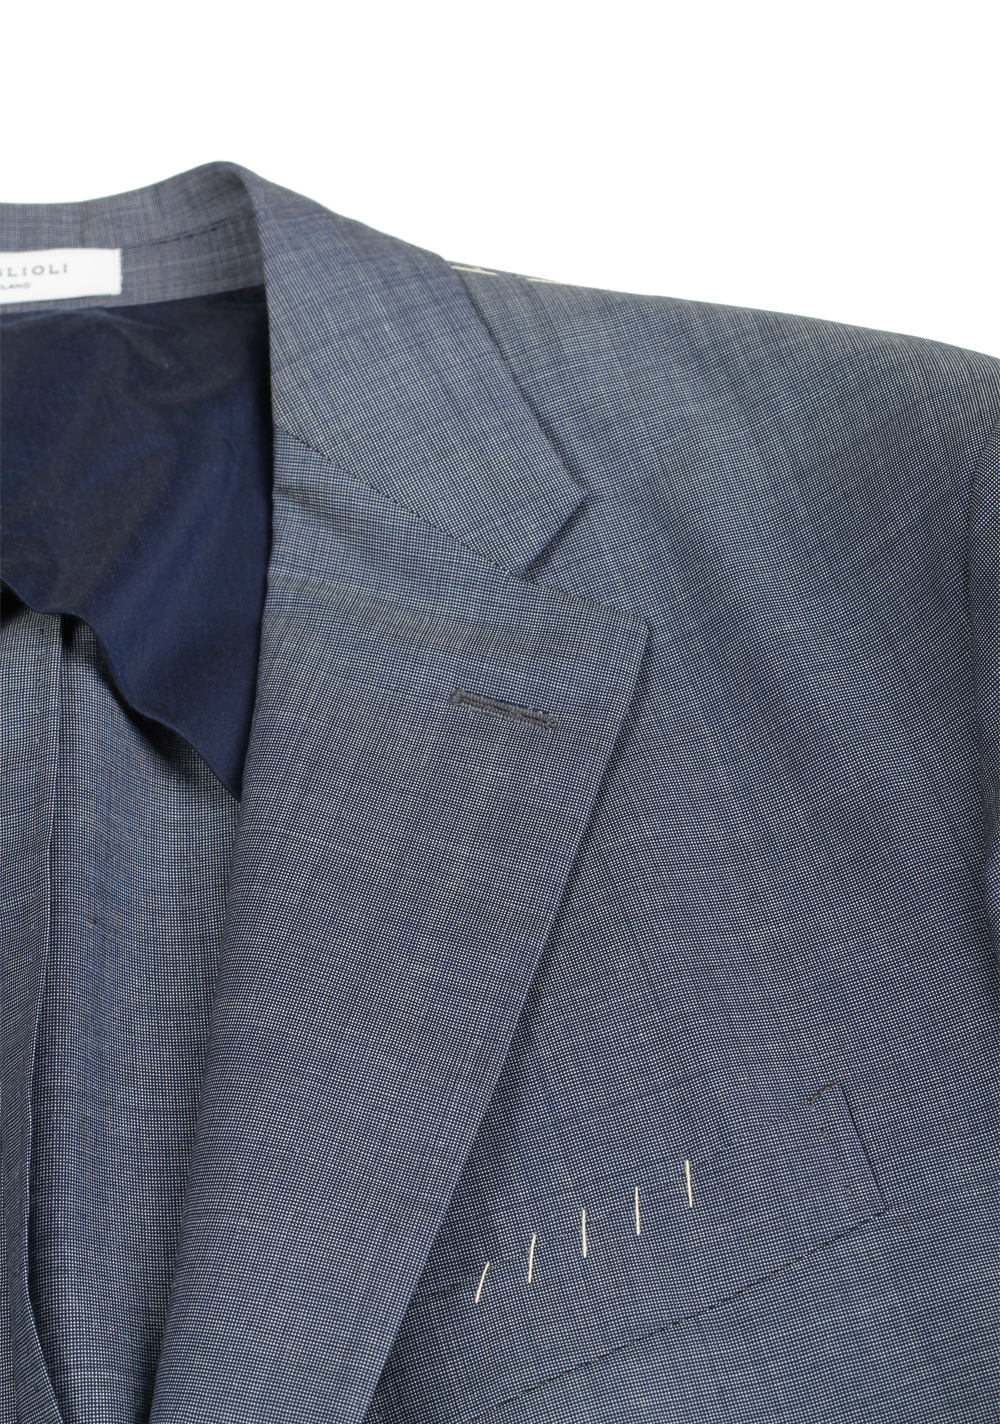 Boglioli 69 Blue Suit Size 54 / 44R U.S. | Costume Limité